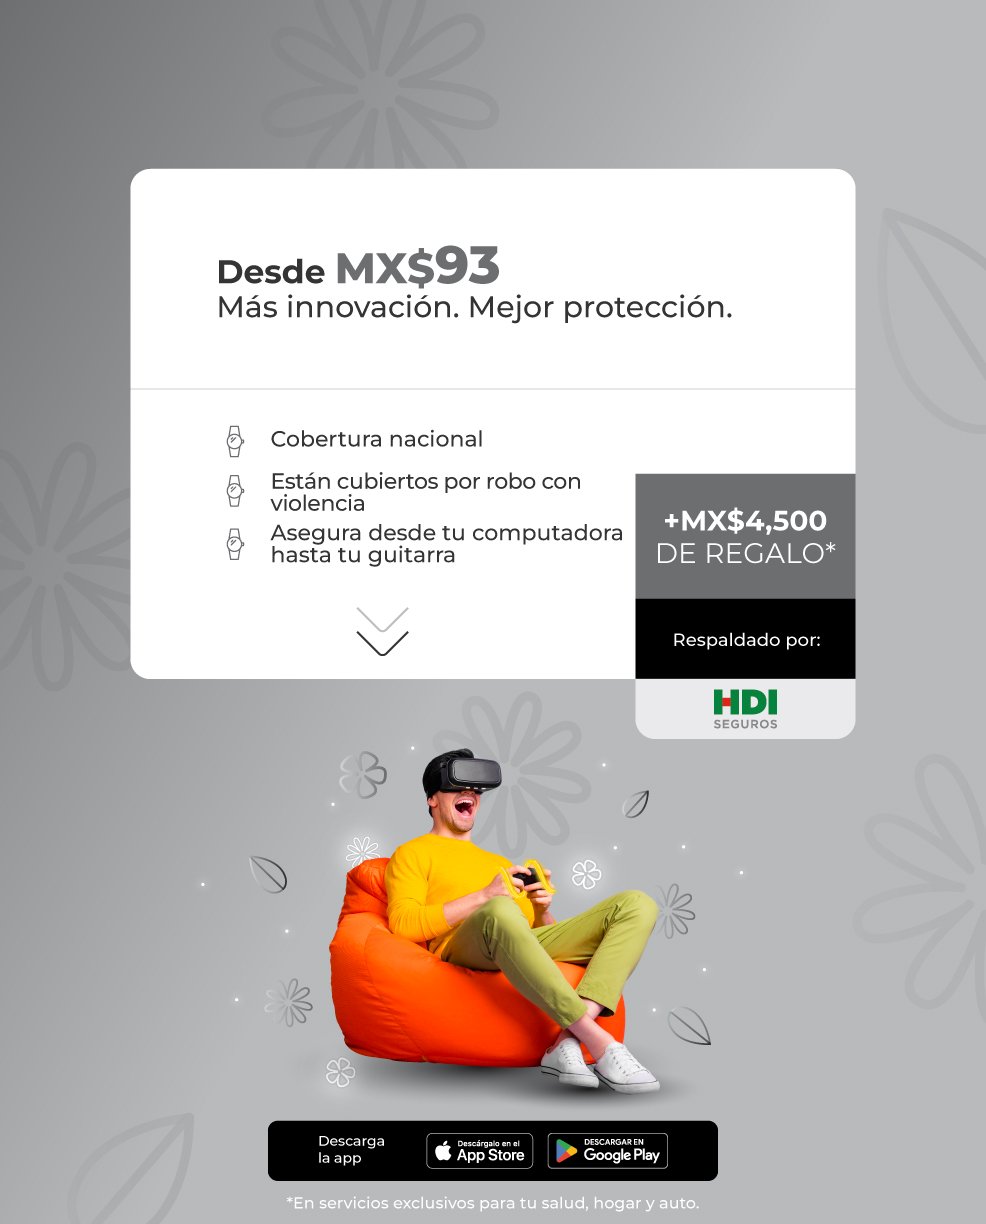 Protege tus Gadgets desde MX$93 al mes